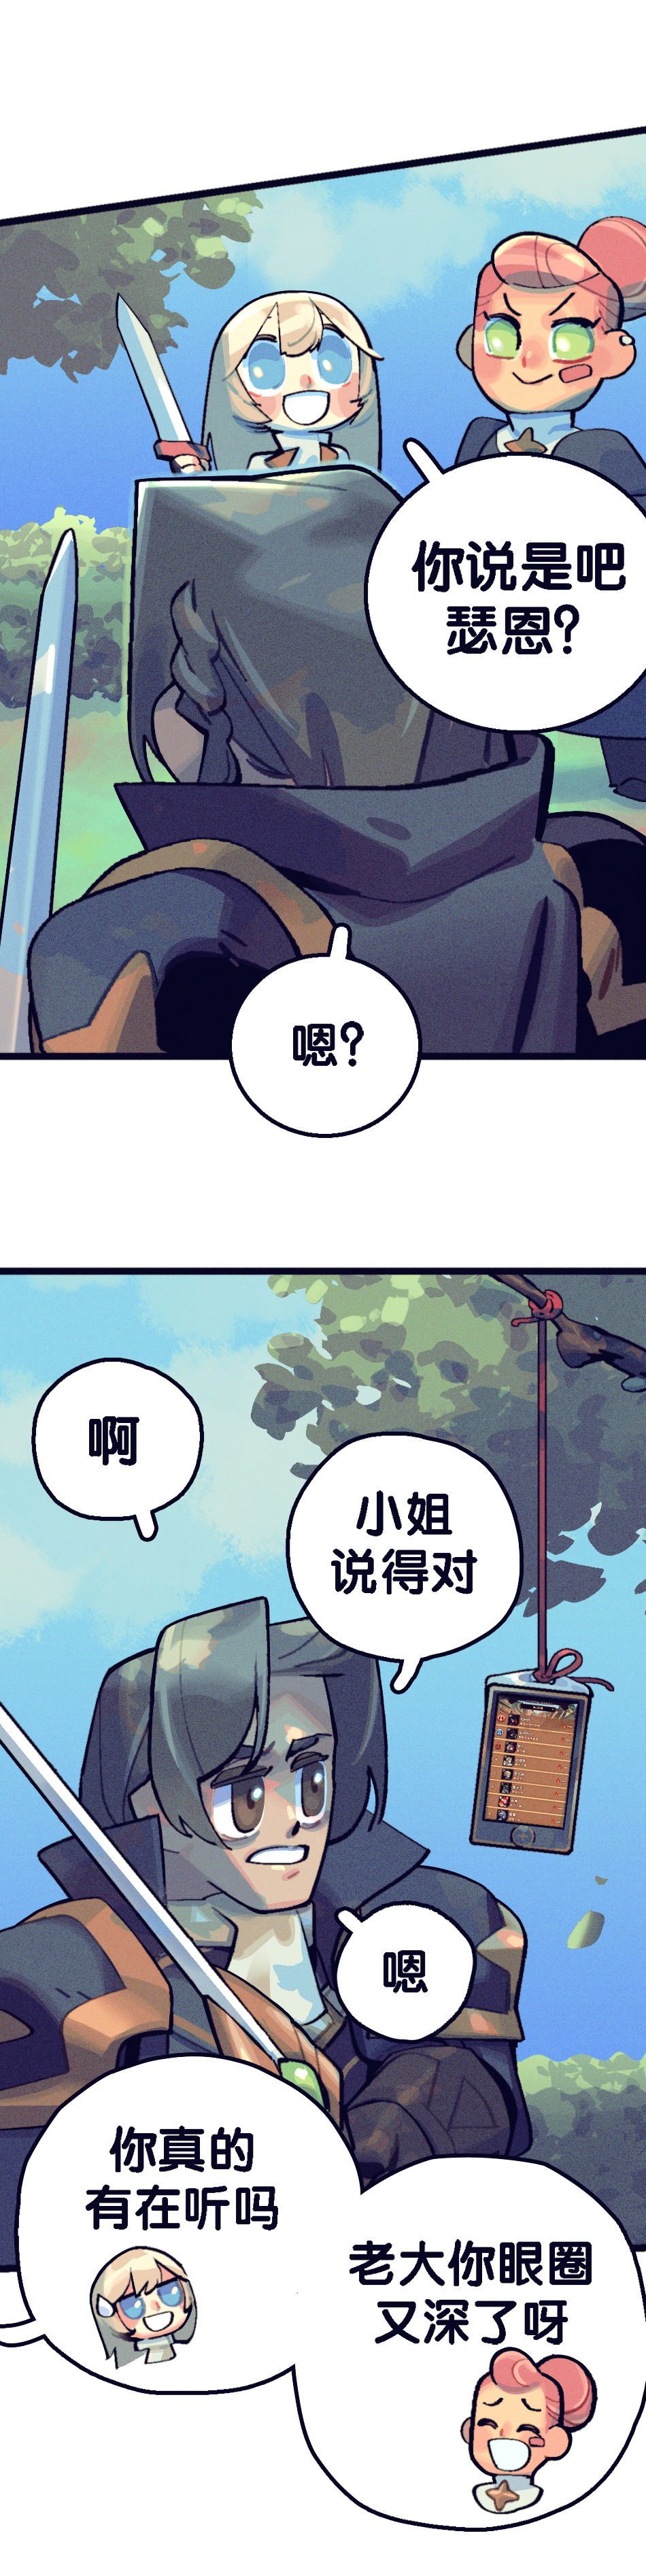 【遠征漫畫】《好的！小姐》  第11&12話|劍與遠征 - 第5張